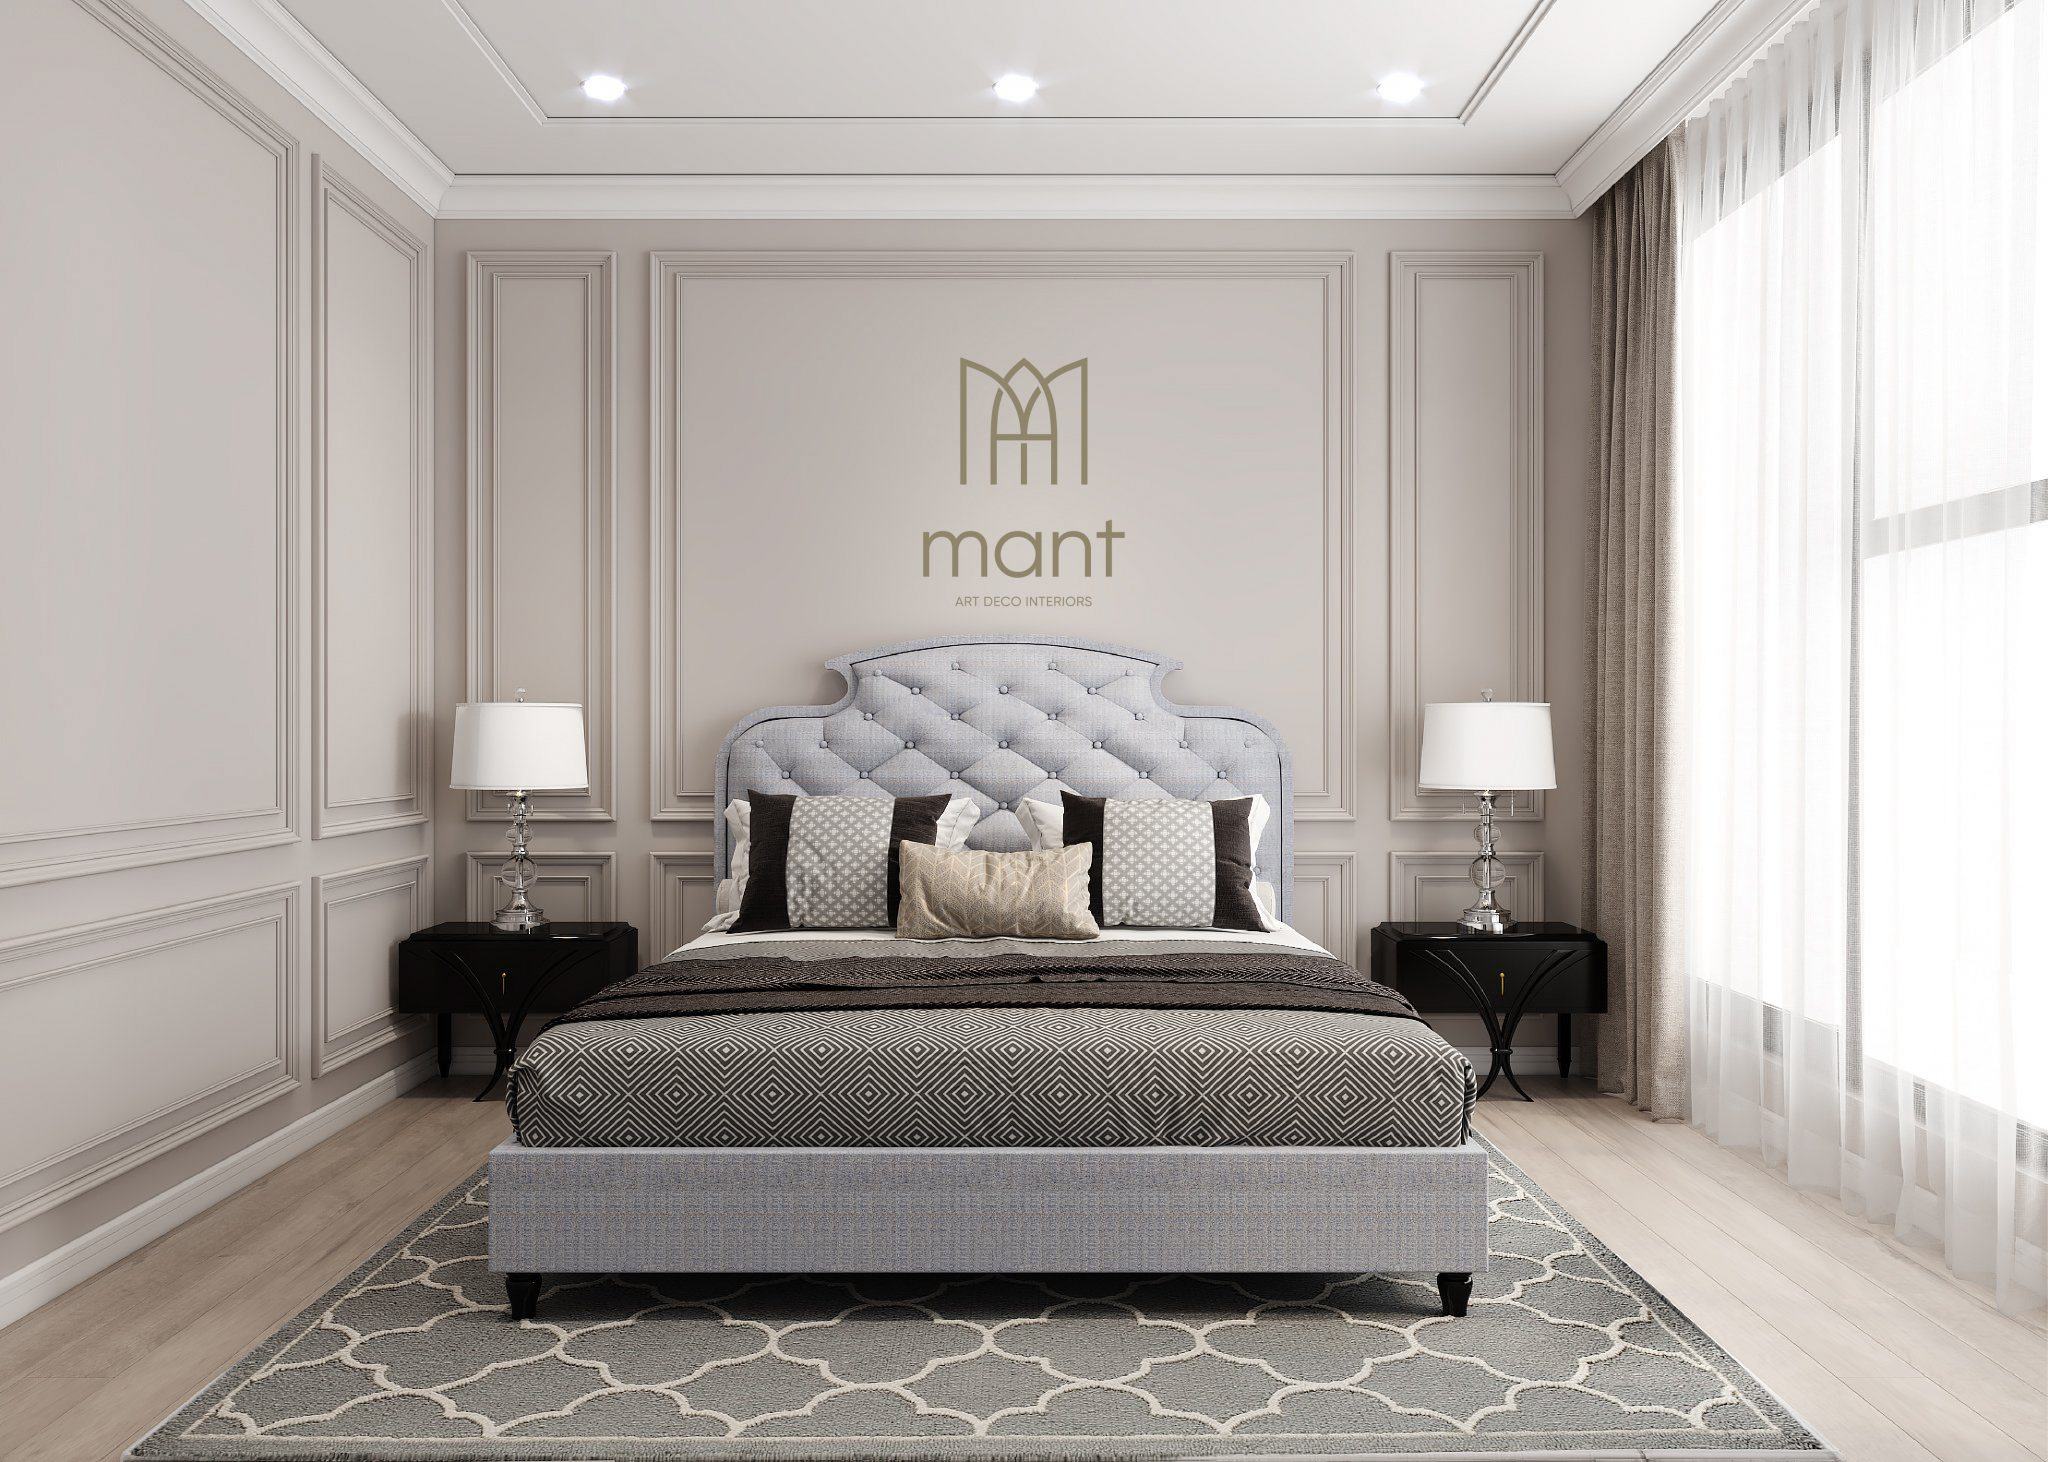 Gợi ý 5 mẫu giường ngủ tinh tế phong cách nội thất Art Deco